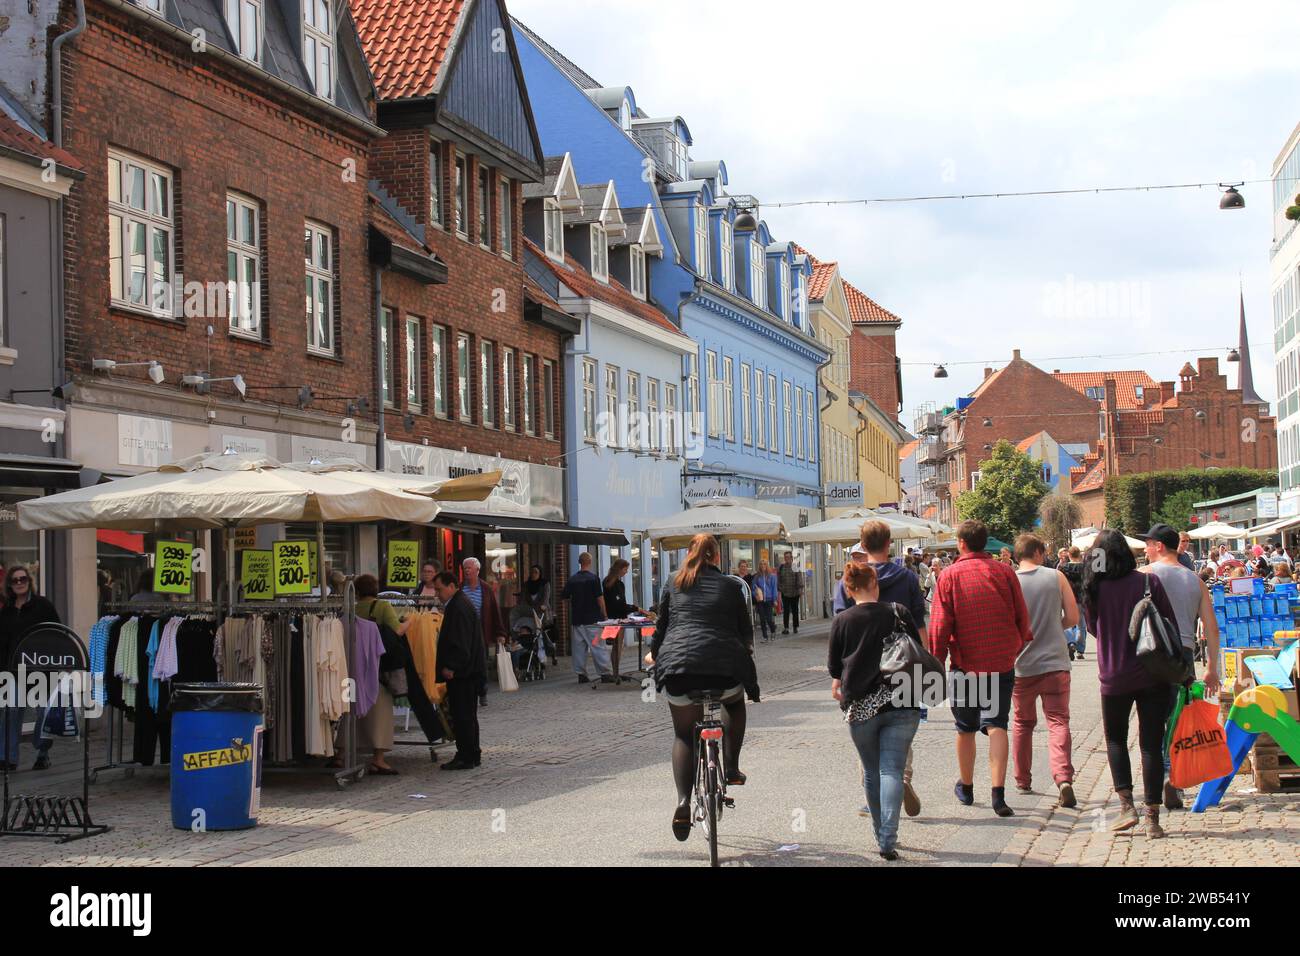 Petite ville de Roskilde, Danemark, pendant le célèbre festival de Roskilde. Le festival est l'un des plus grands festivals de musique en Europe. Banque D'Images